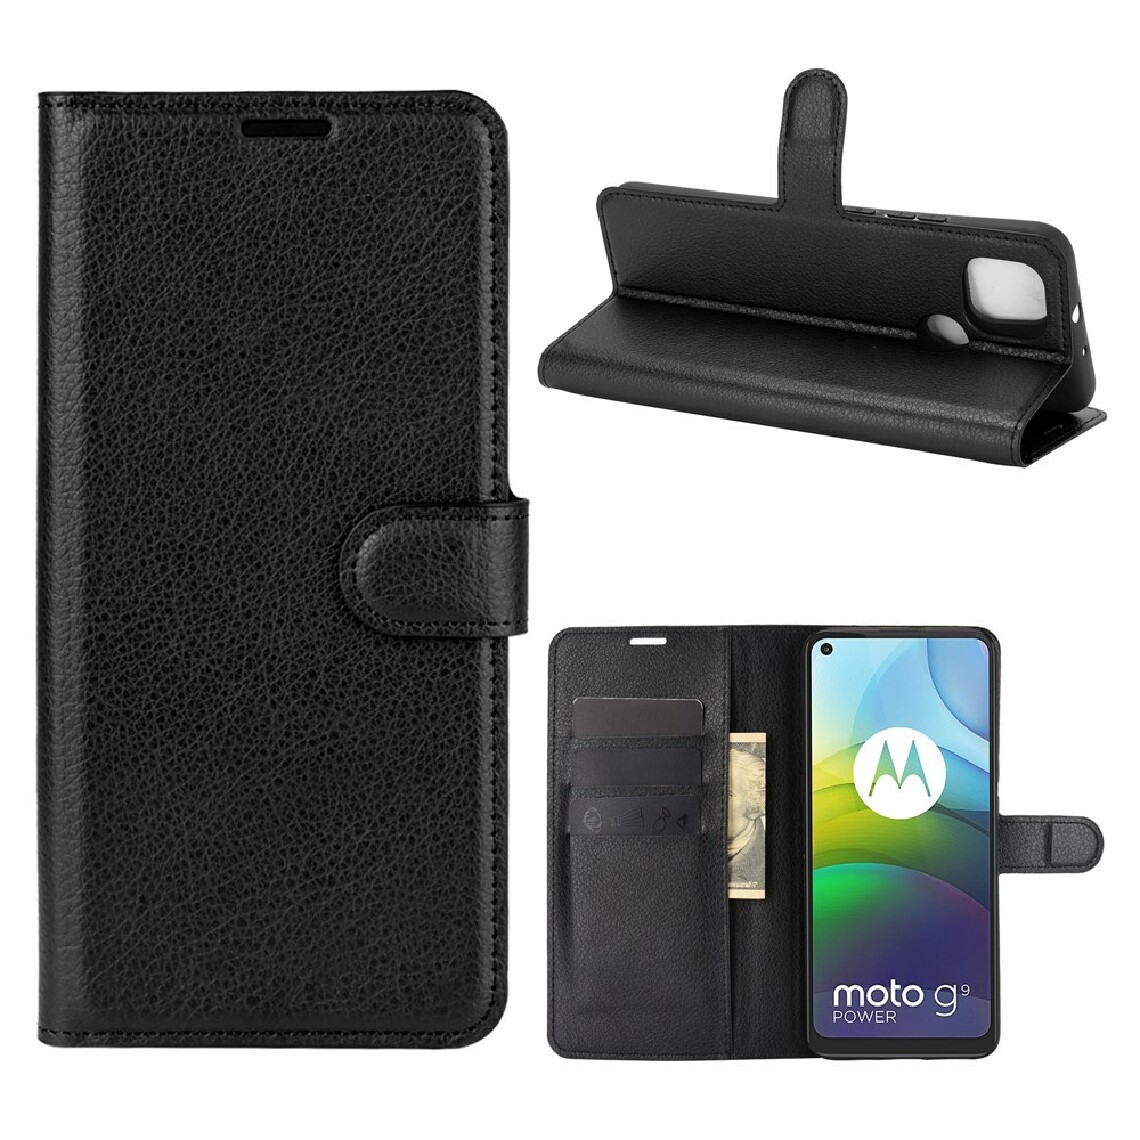 Other - Etui en PU texture de litchi noir pour votre Motorola Moto G9 Power - Coque, étui smartphone